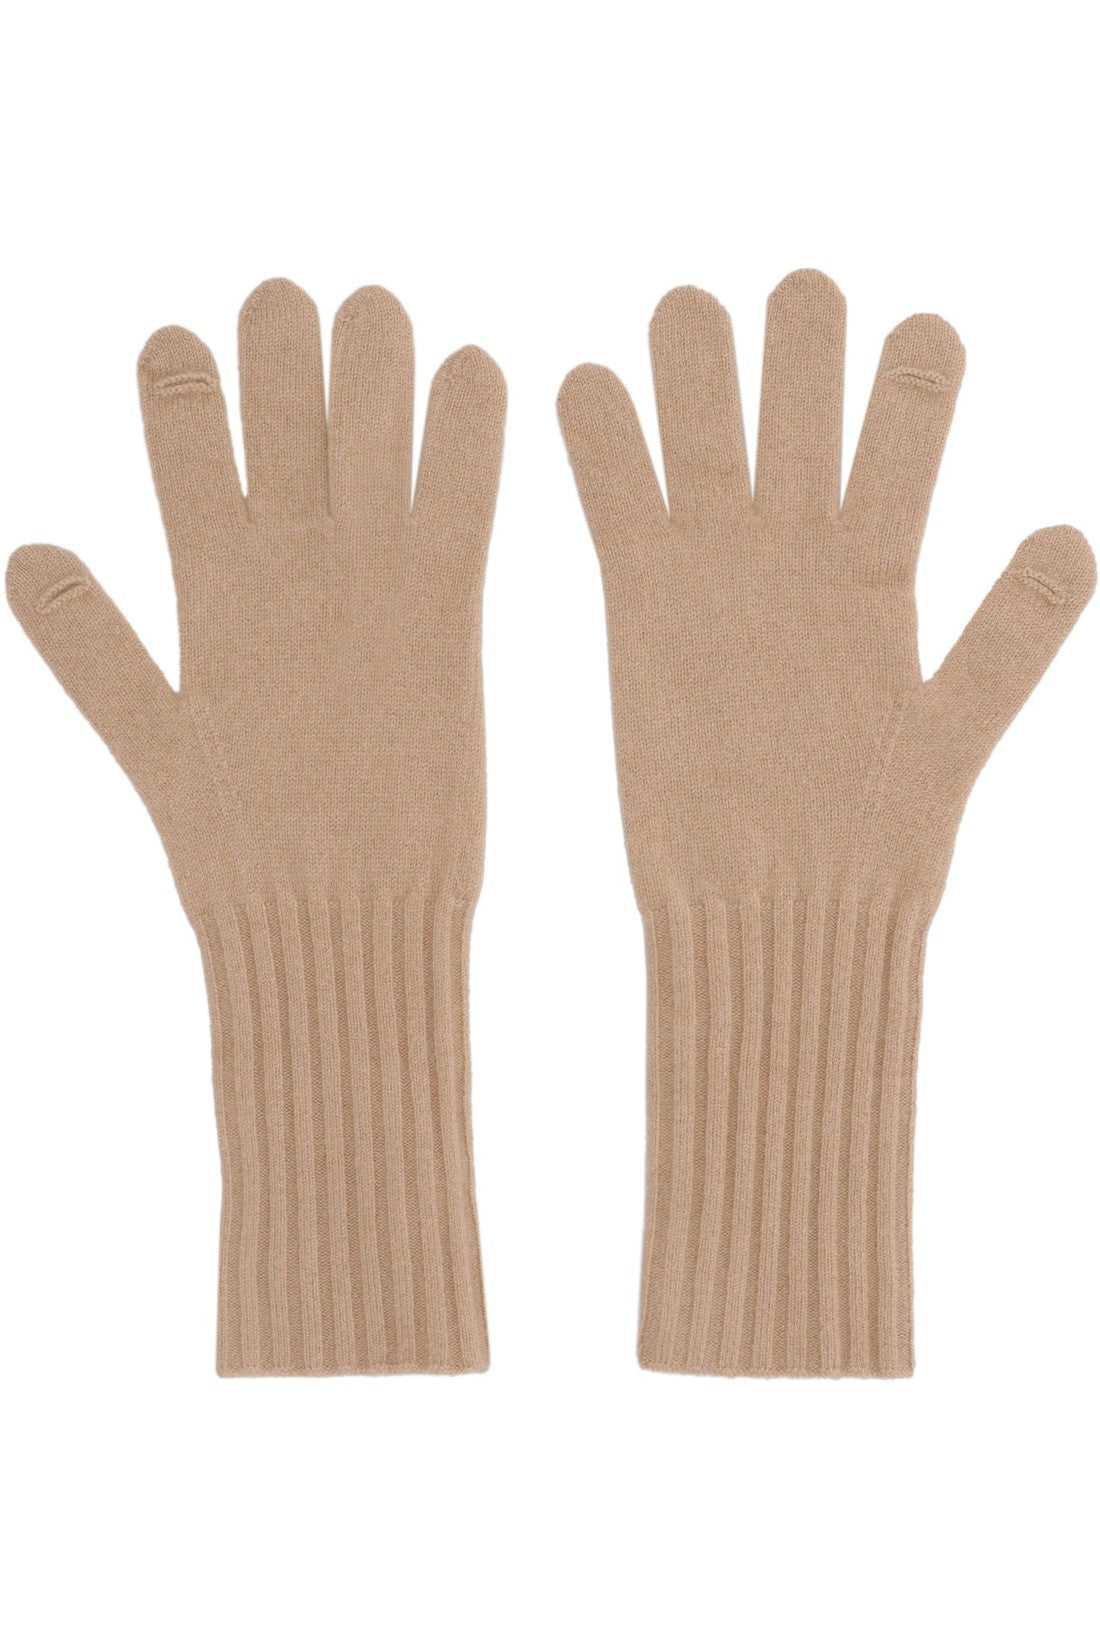 Vince-OUTLET-SALE-Cashmere gloves-ARCHIVIST